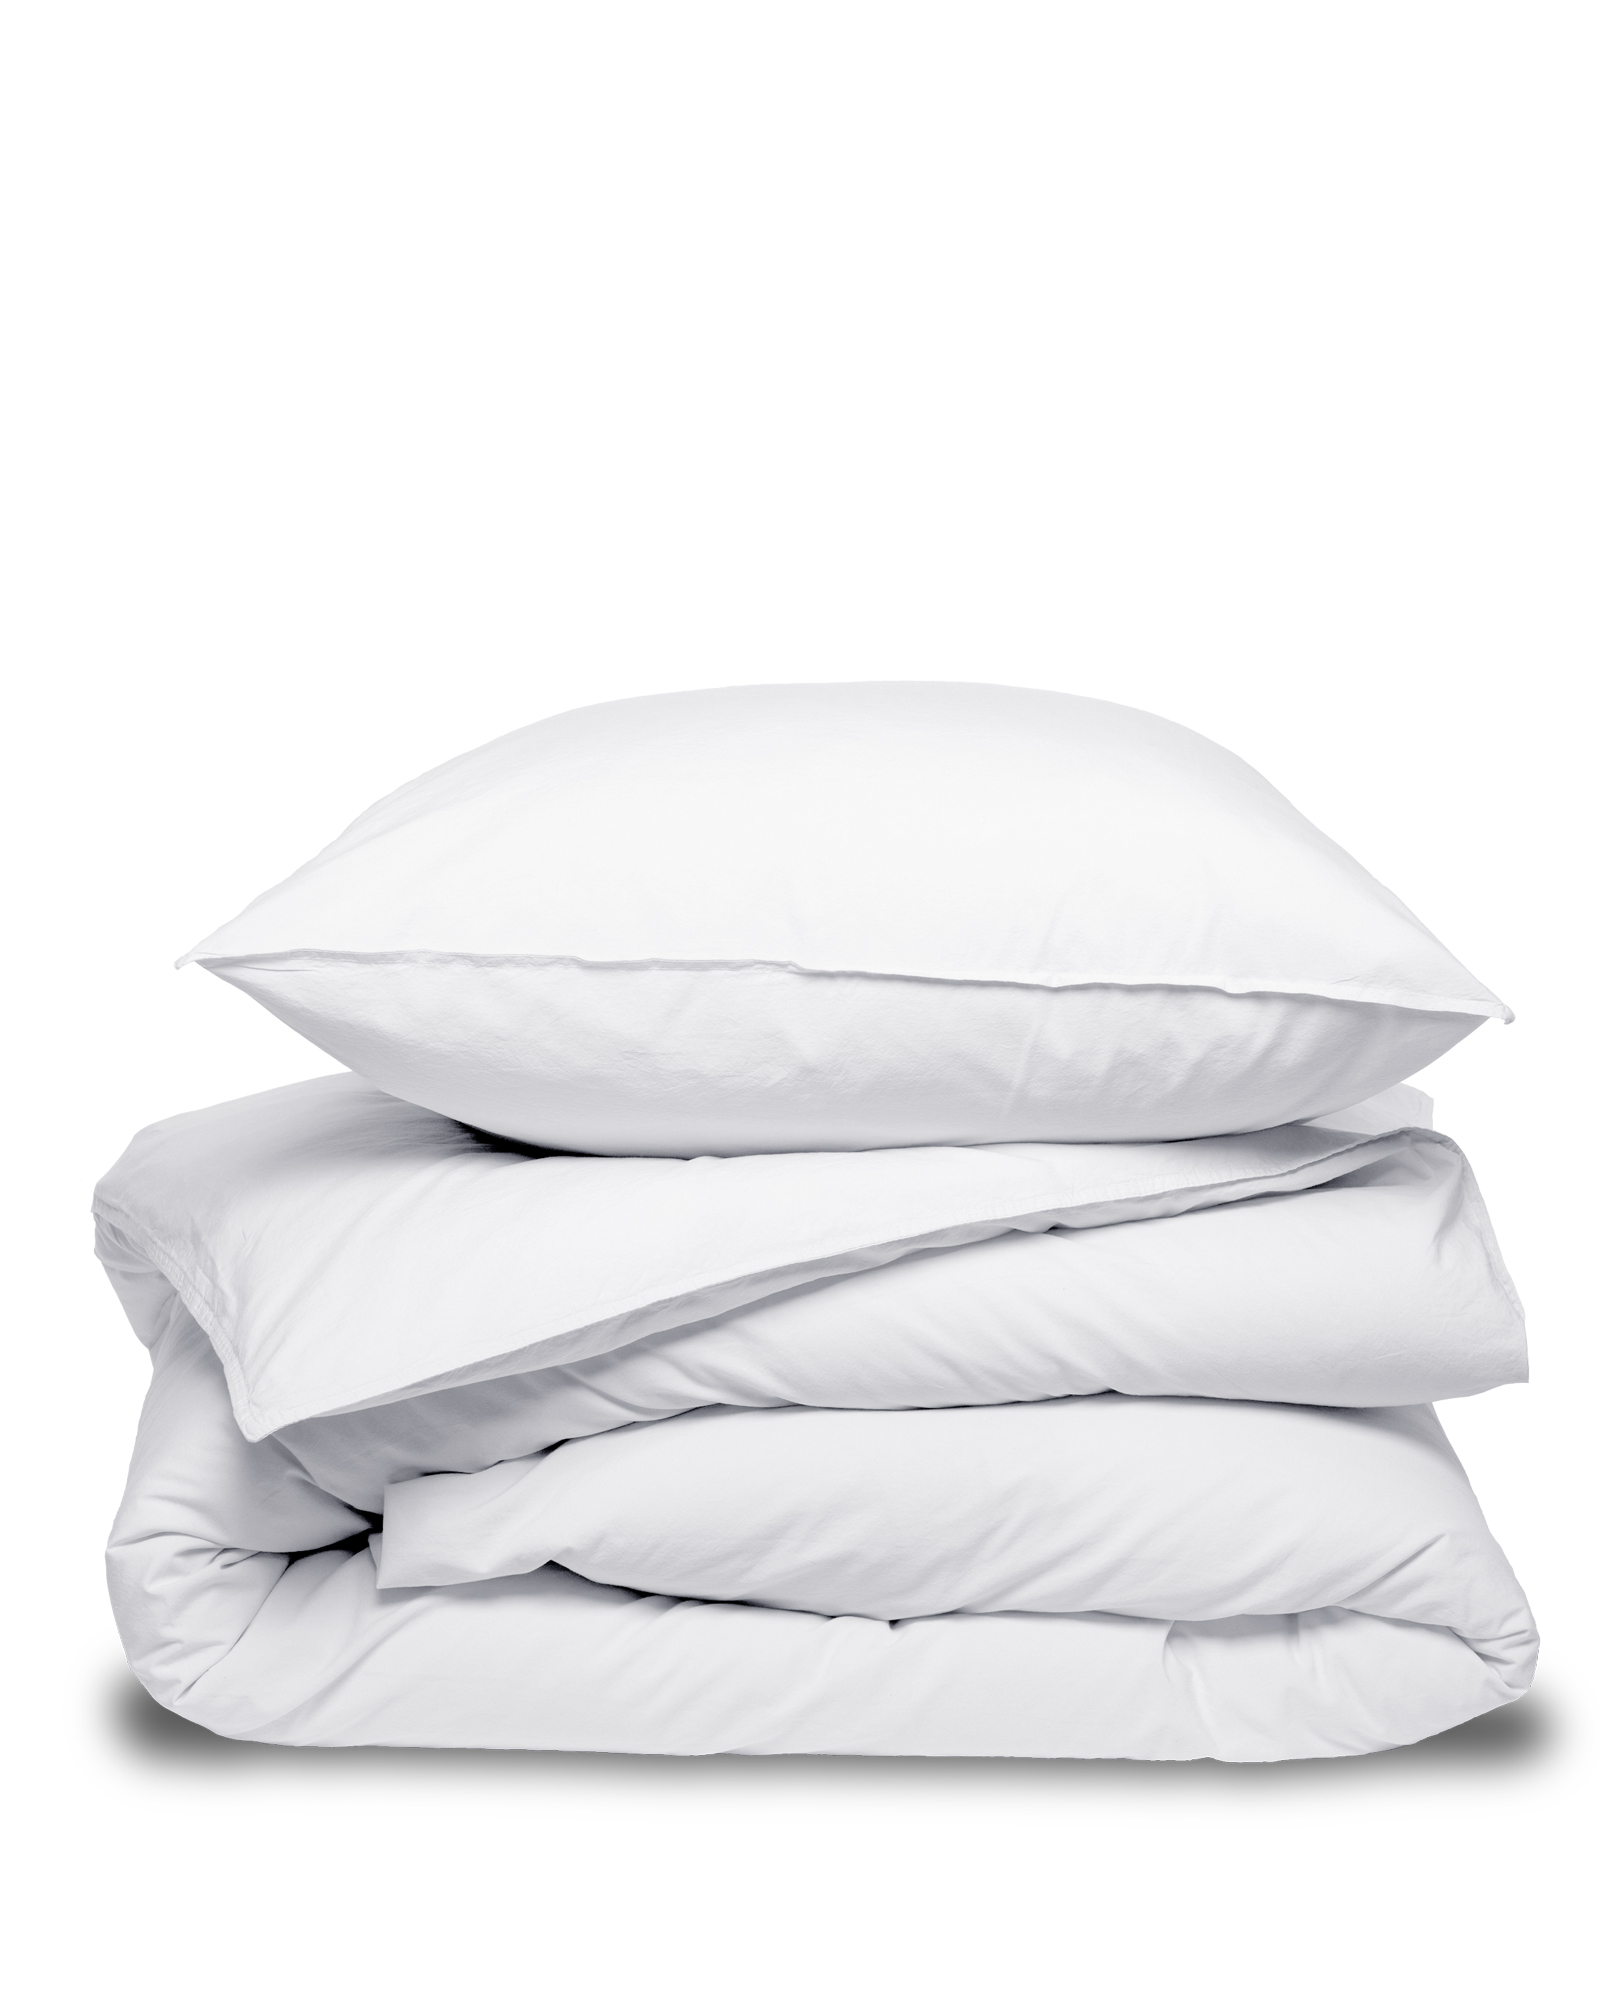 MARIE-MARIE - Pillowcase VINTAGE COTTON White Snow - 65x65 cm - White Snow